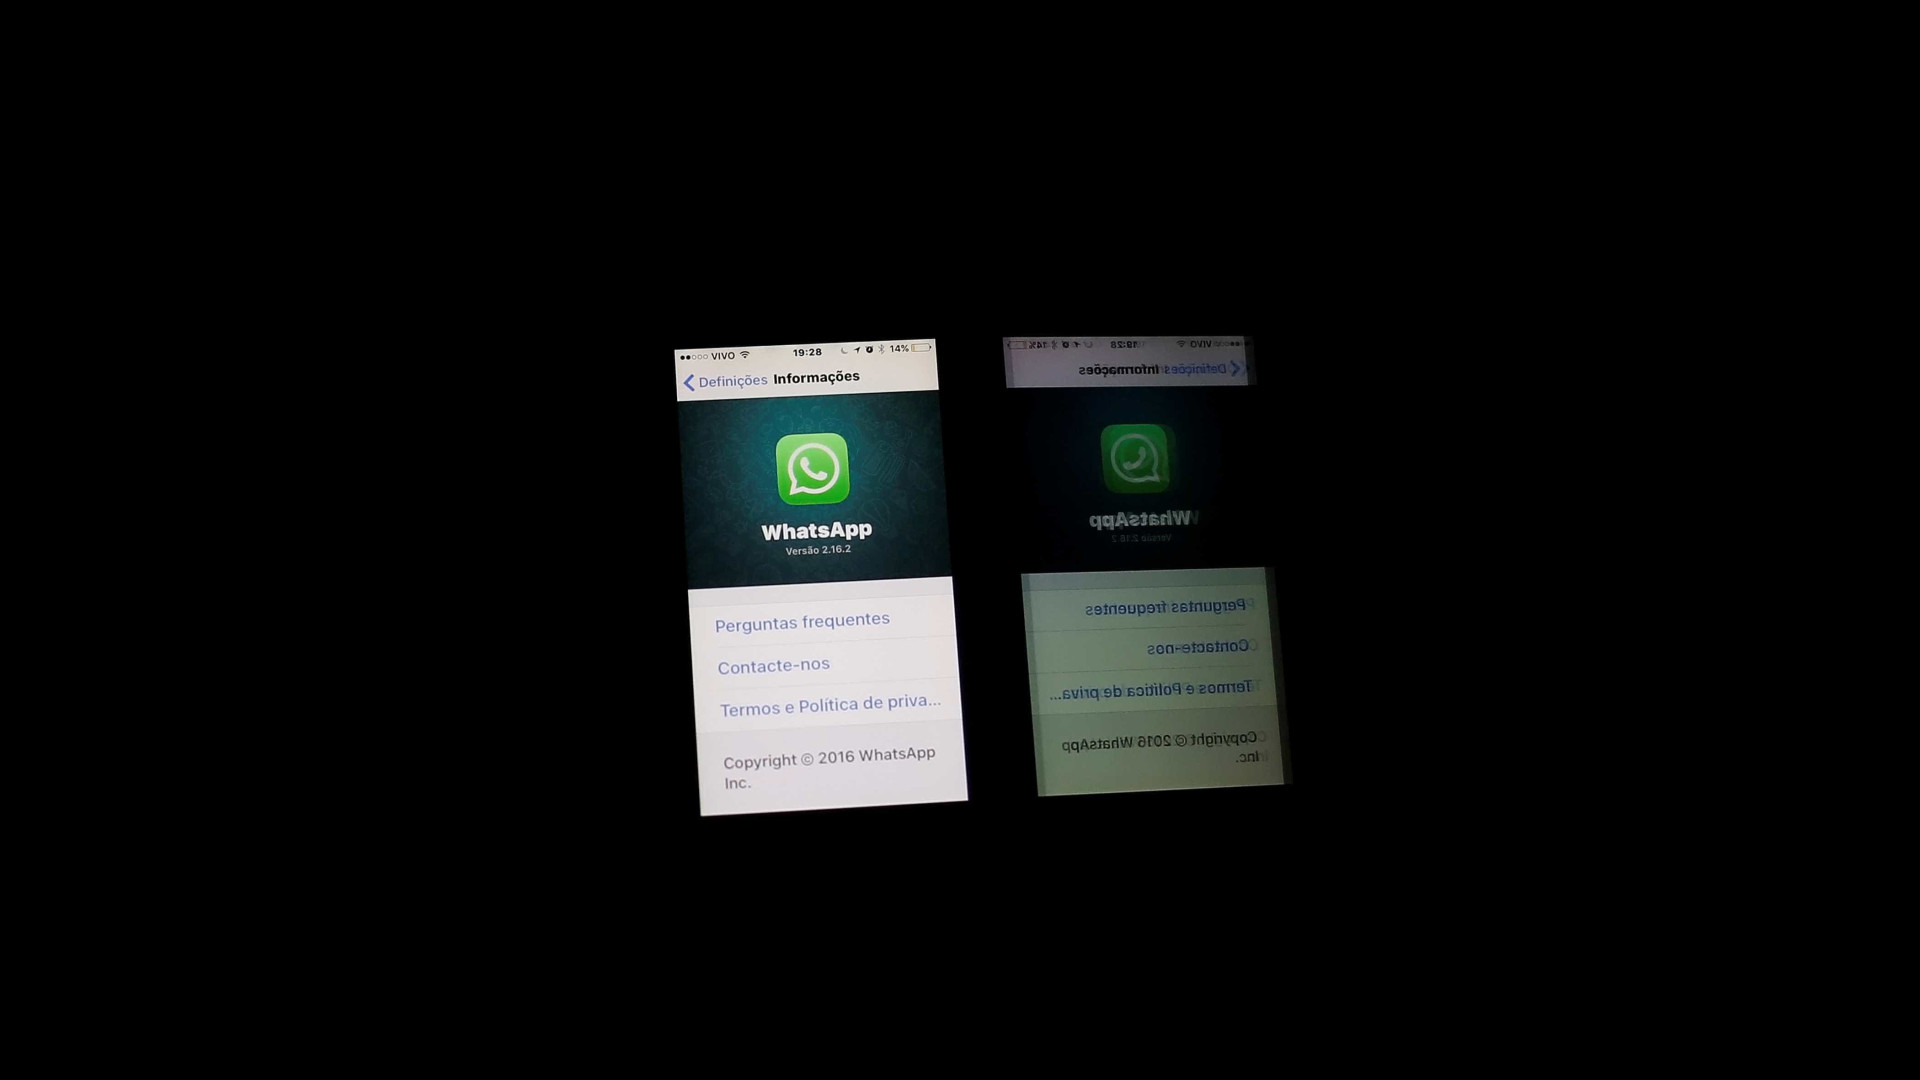 Novo golpe usa chamadas de vídeo do
WhatsApp para atrair pessoas